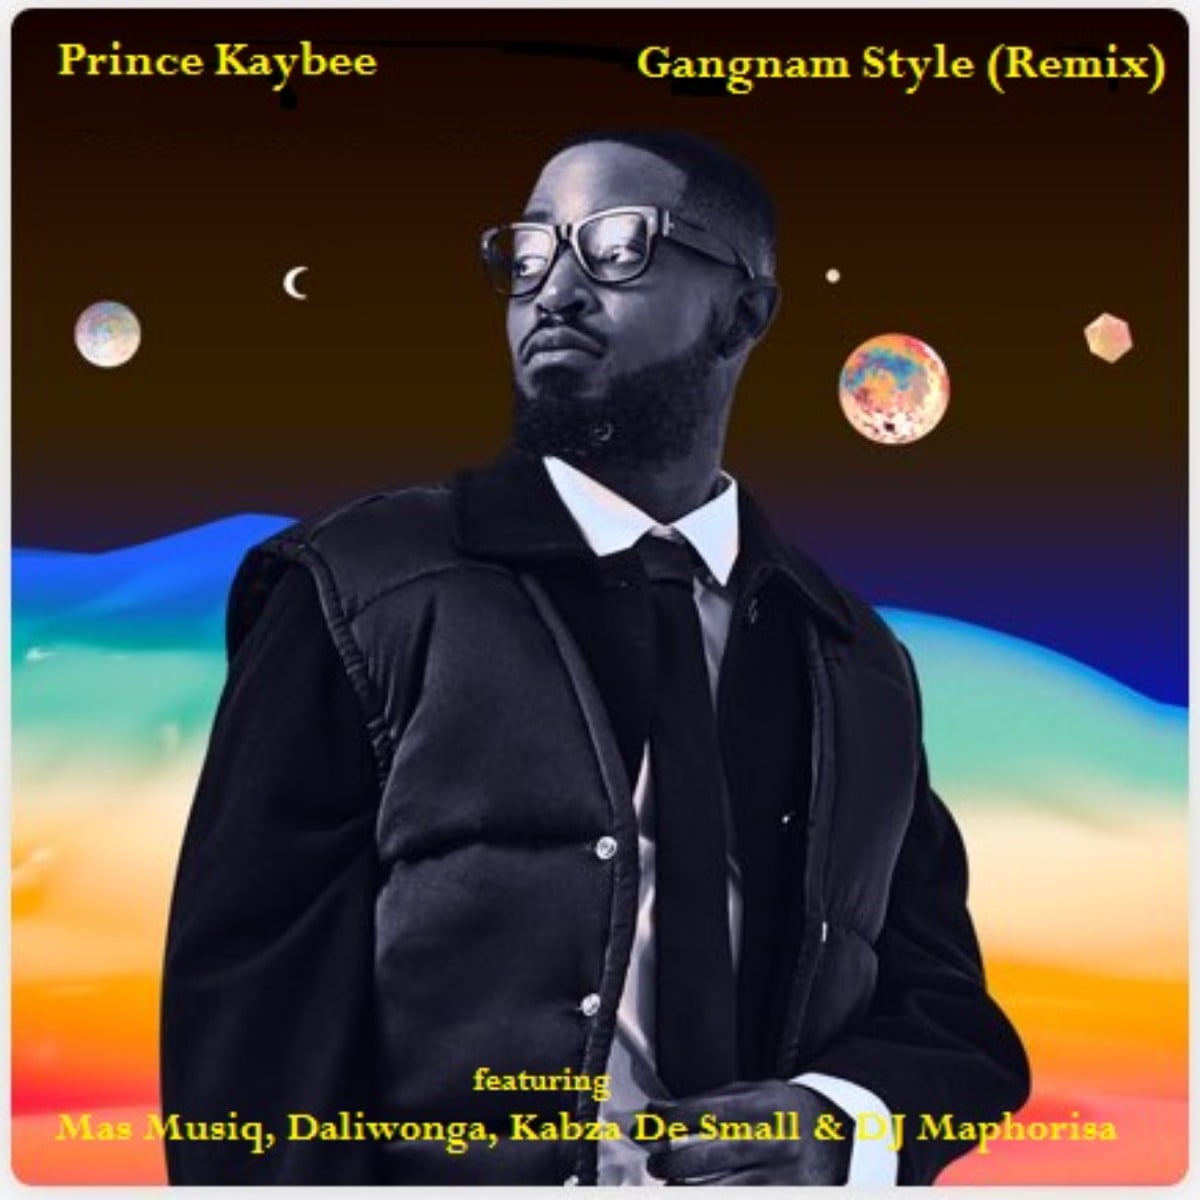 Prince Kaybee – Gangnam Style (Remix) ft. Mas Musiq, Daliwonga, Kabza De Small & DJ Maphorisa mp3 download free lyrics